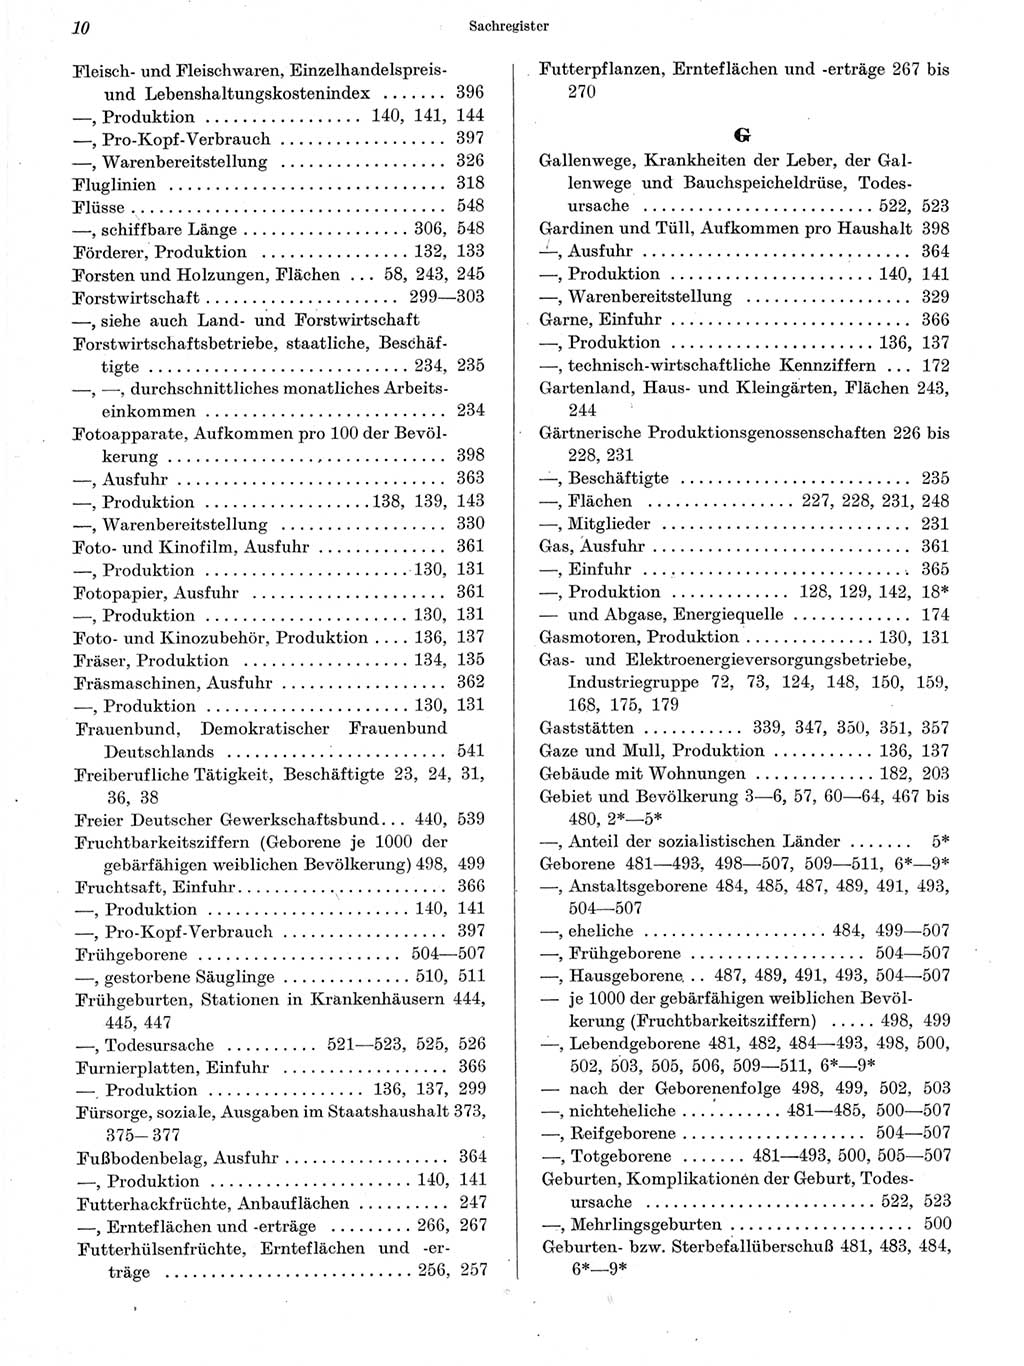 Statistisches Jahrbuch der Deutschen Demokratischen Republik (DDR) 1963, Seite 10 (Stat. Jb. DDR 1963, S. 10)